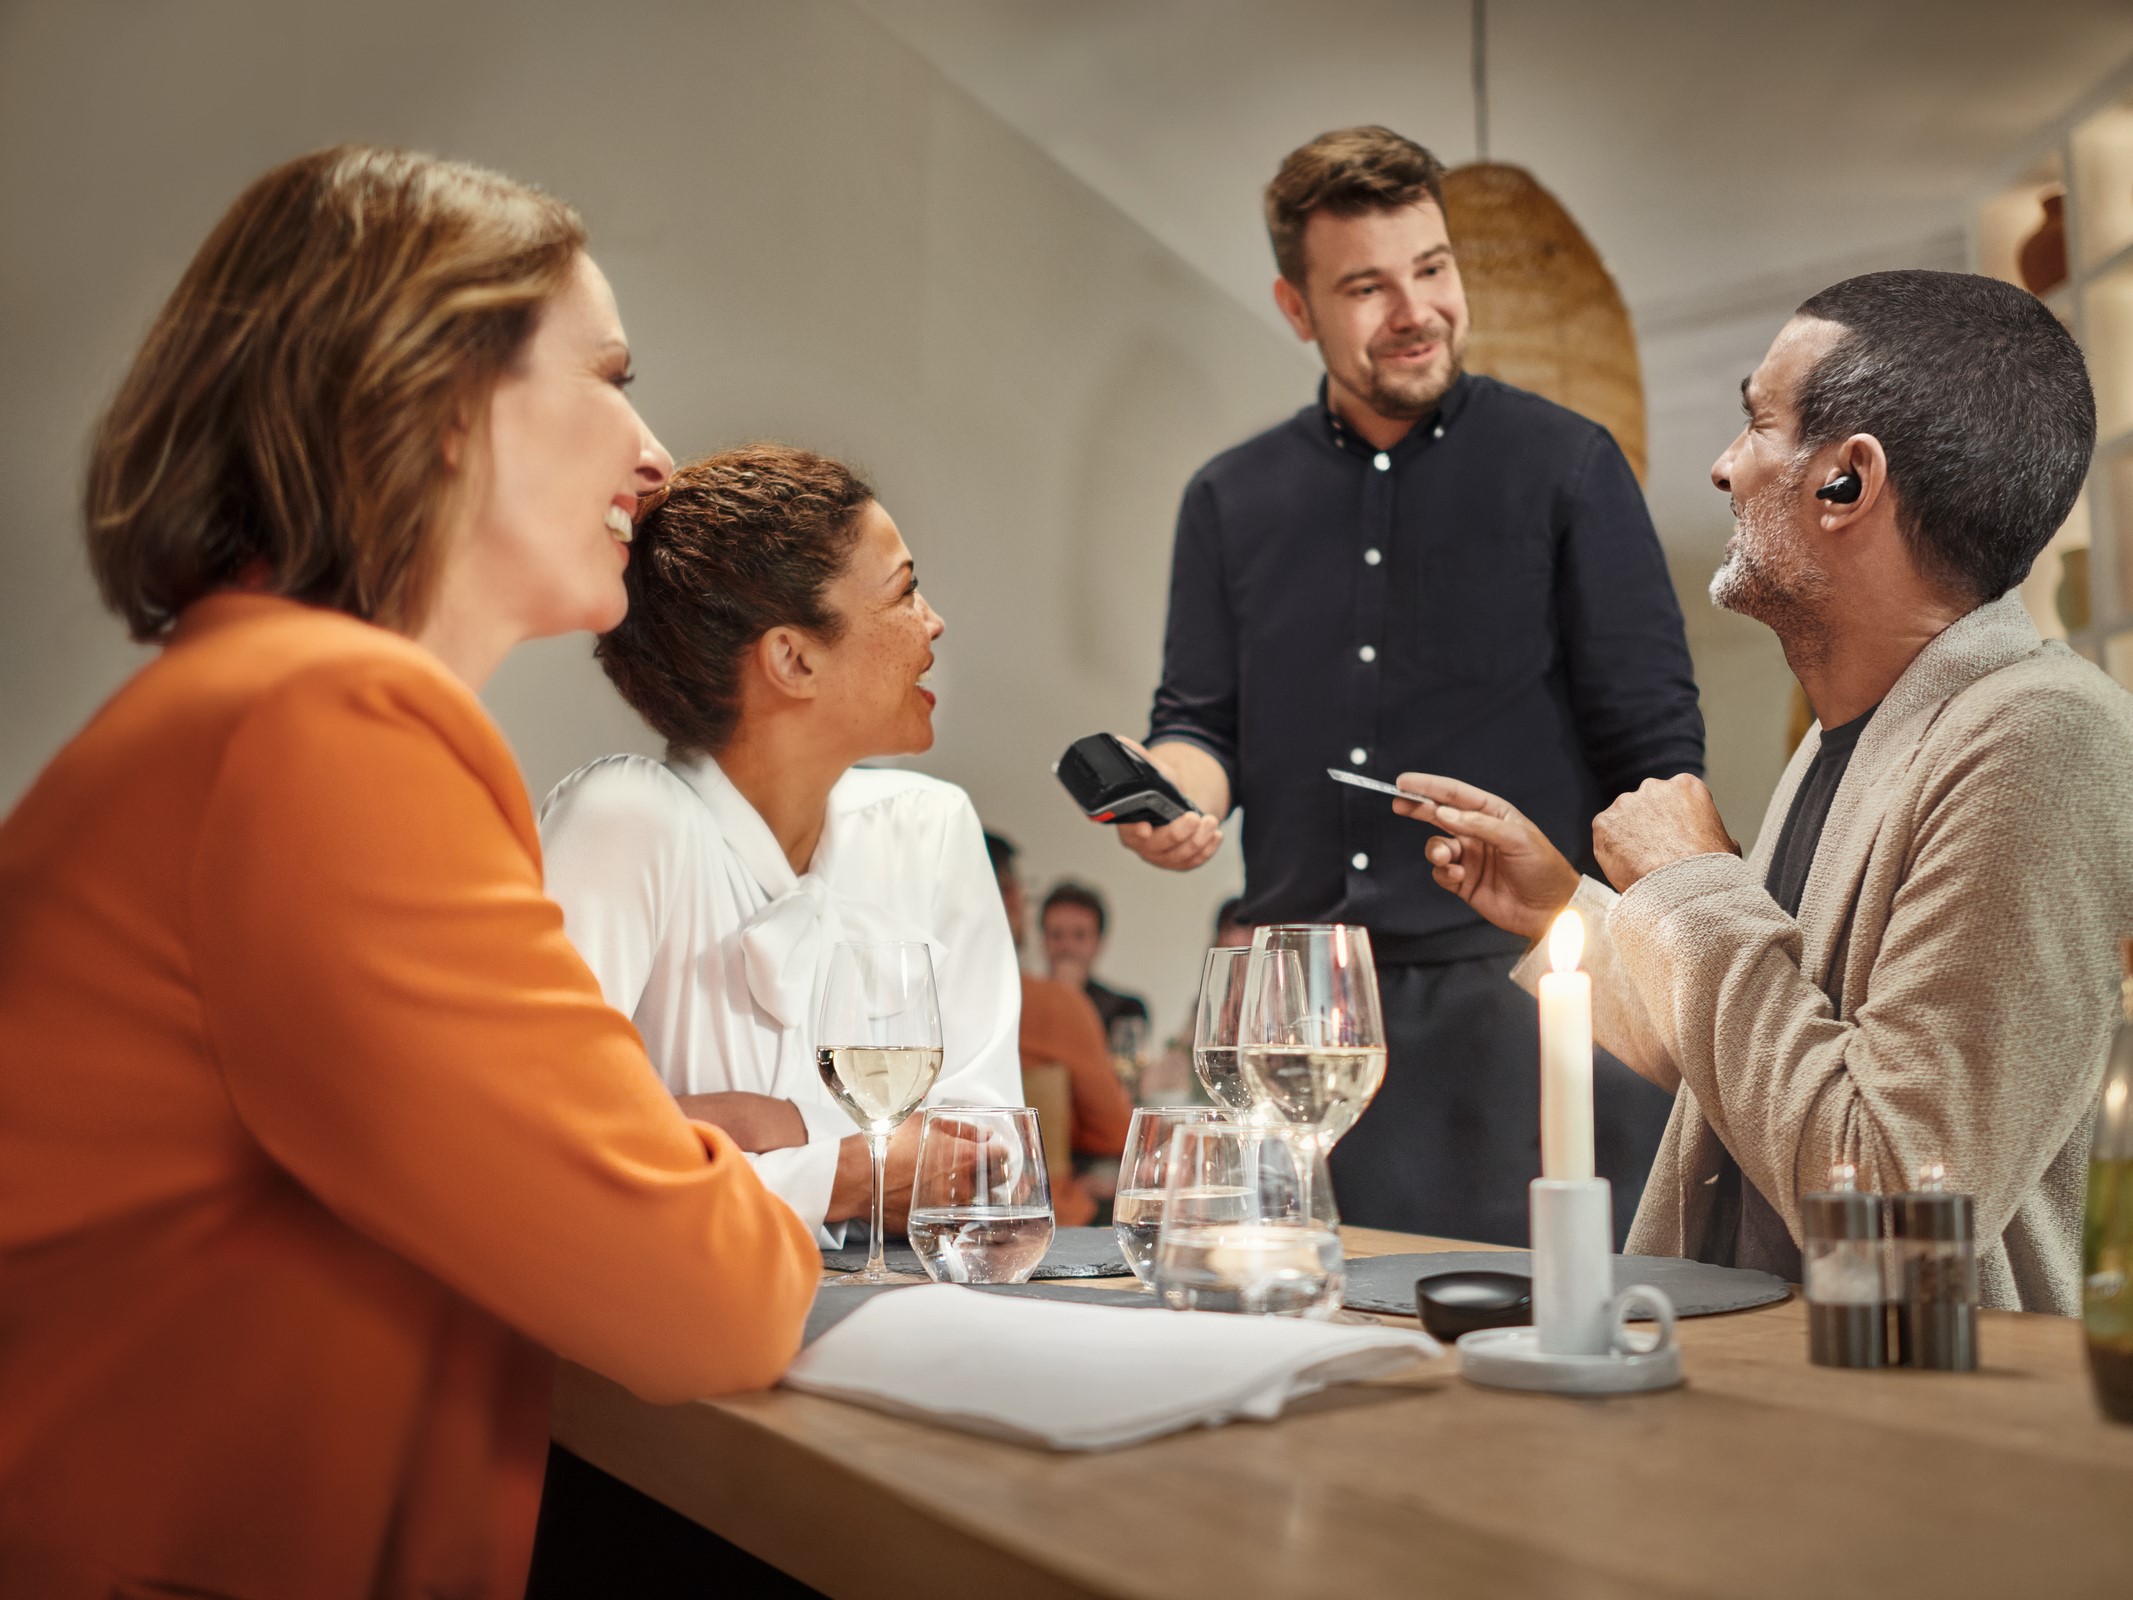 सेन्हाइज़र कन्वर्सेशन क्लियर प्लस सुनने के लिए रेस्तरां में पहना जा रहा है